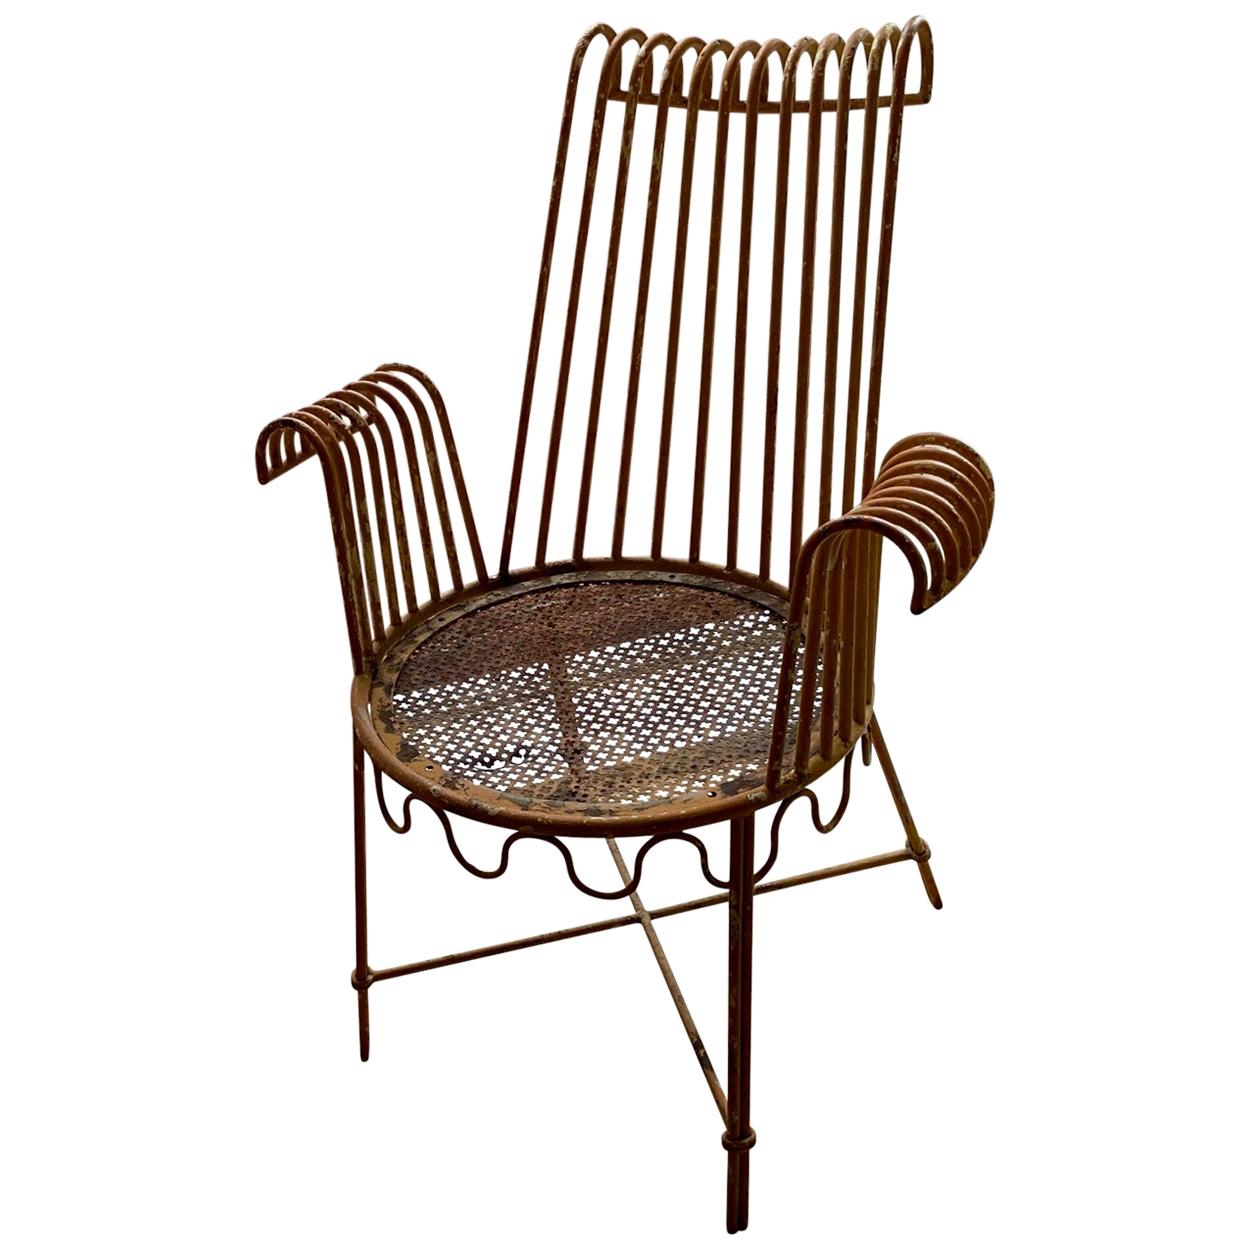 Mathieu Matégot Metal Outdoor Chair Similar to the Cap d'Ail Model, 1950s French